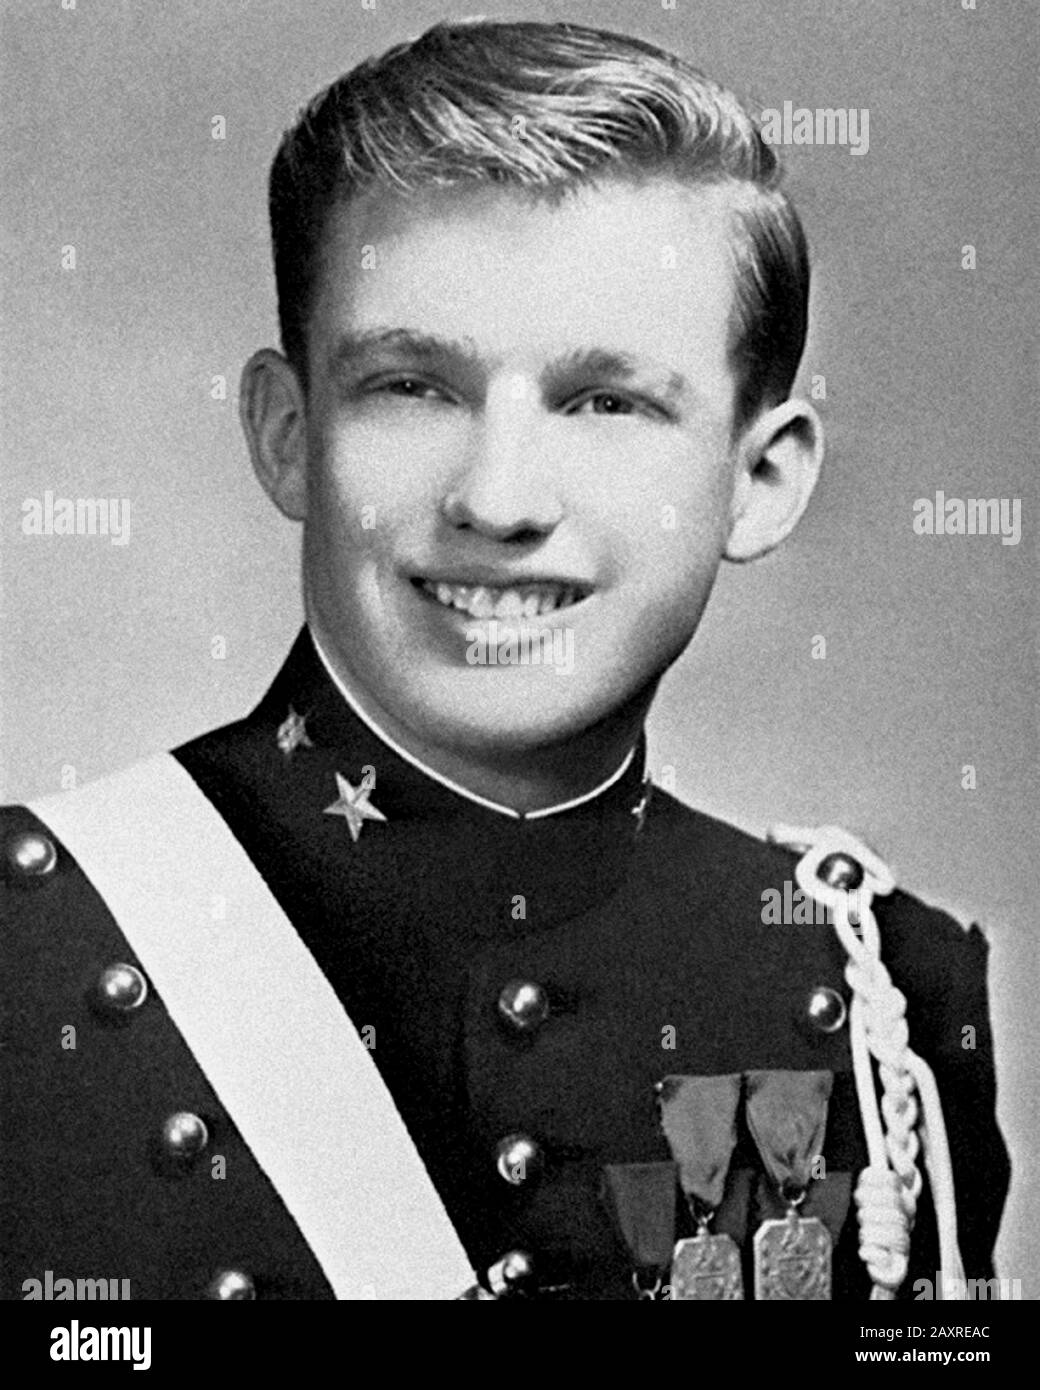 1964 , USA : il futuro 45th Presidente degli Stati Uniti DONALD John TRUMP ( New York City, 14 giugno 1946 ) 18 anni all'Accademia militare .- PRESIDENTE DEGLI STATI Uniti D'AMERICA - POLITICO - POLITICO - POLITICO - STORIA - FOTO STORICHE STORICHE - celebrità da giovani giovovane - celebrità quando era giovane - ragazzo - ragazzo - sorriso - sorriso - sorriso - sorriso - uniforme militare - forex uniforme Militare --- Archivio GBB Foto Stock